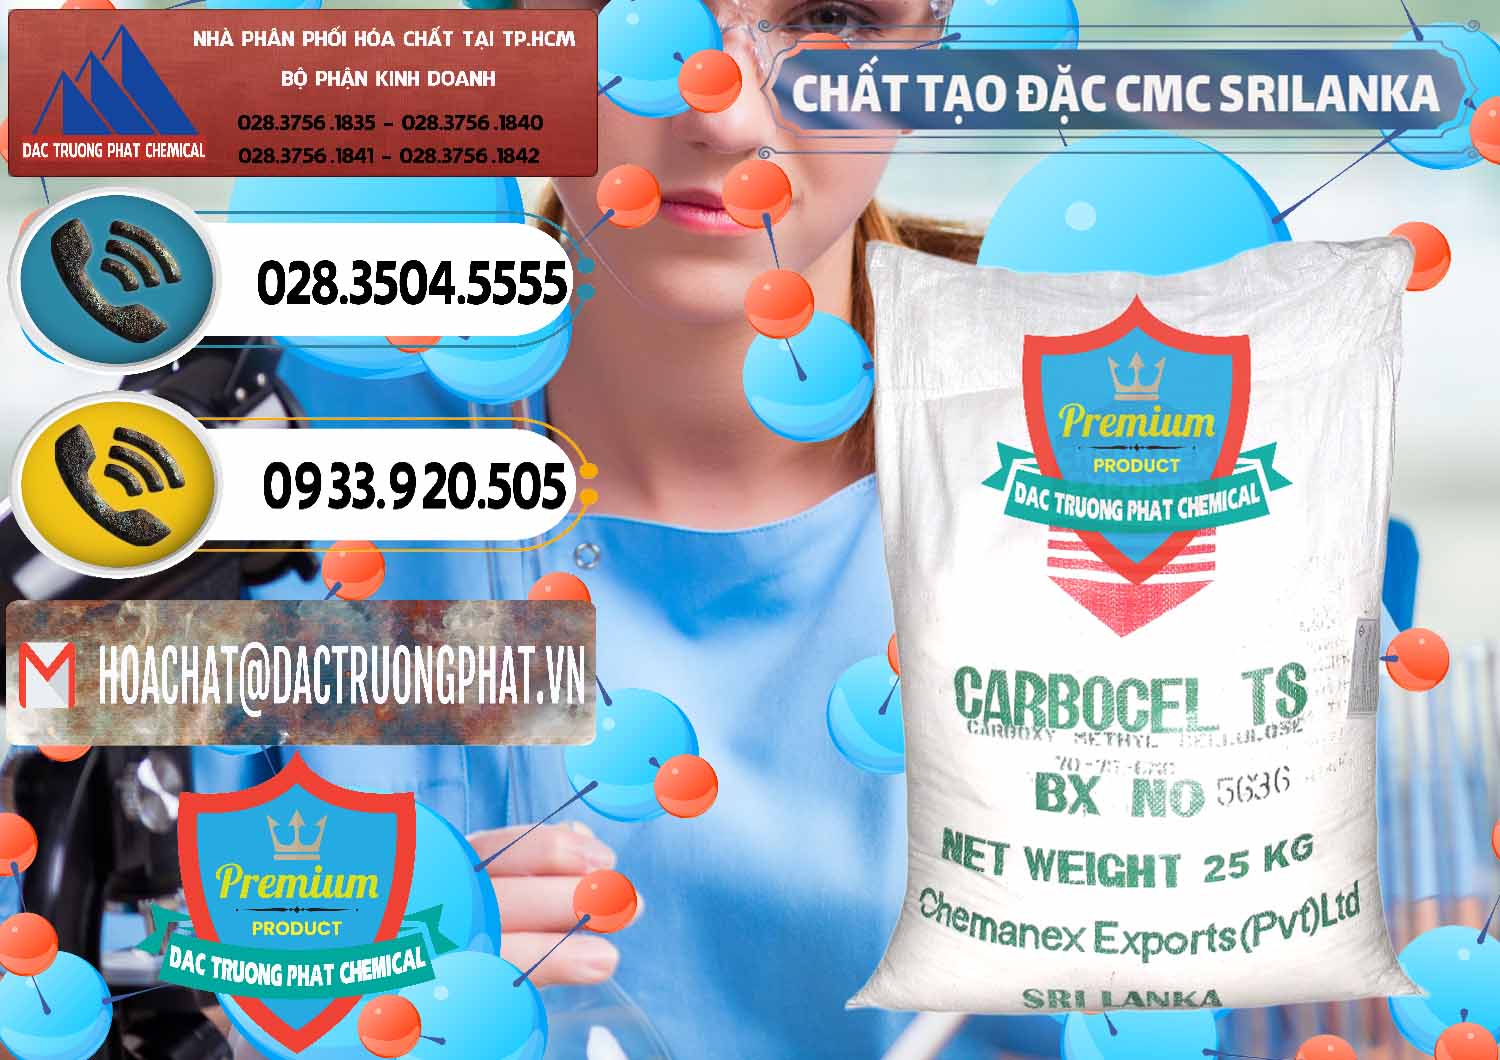 Chuyên bán và cung cấp Chất Tạo Đặc CMC - Carboxyl Methyl Cellulose Srilanka - 0045 - Nơi chuyên cung cấp và bán hóa chất tại TP.HCM - hoachatdetnhuom.vn